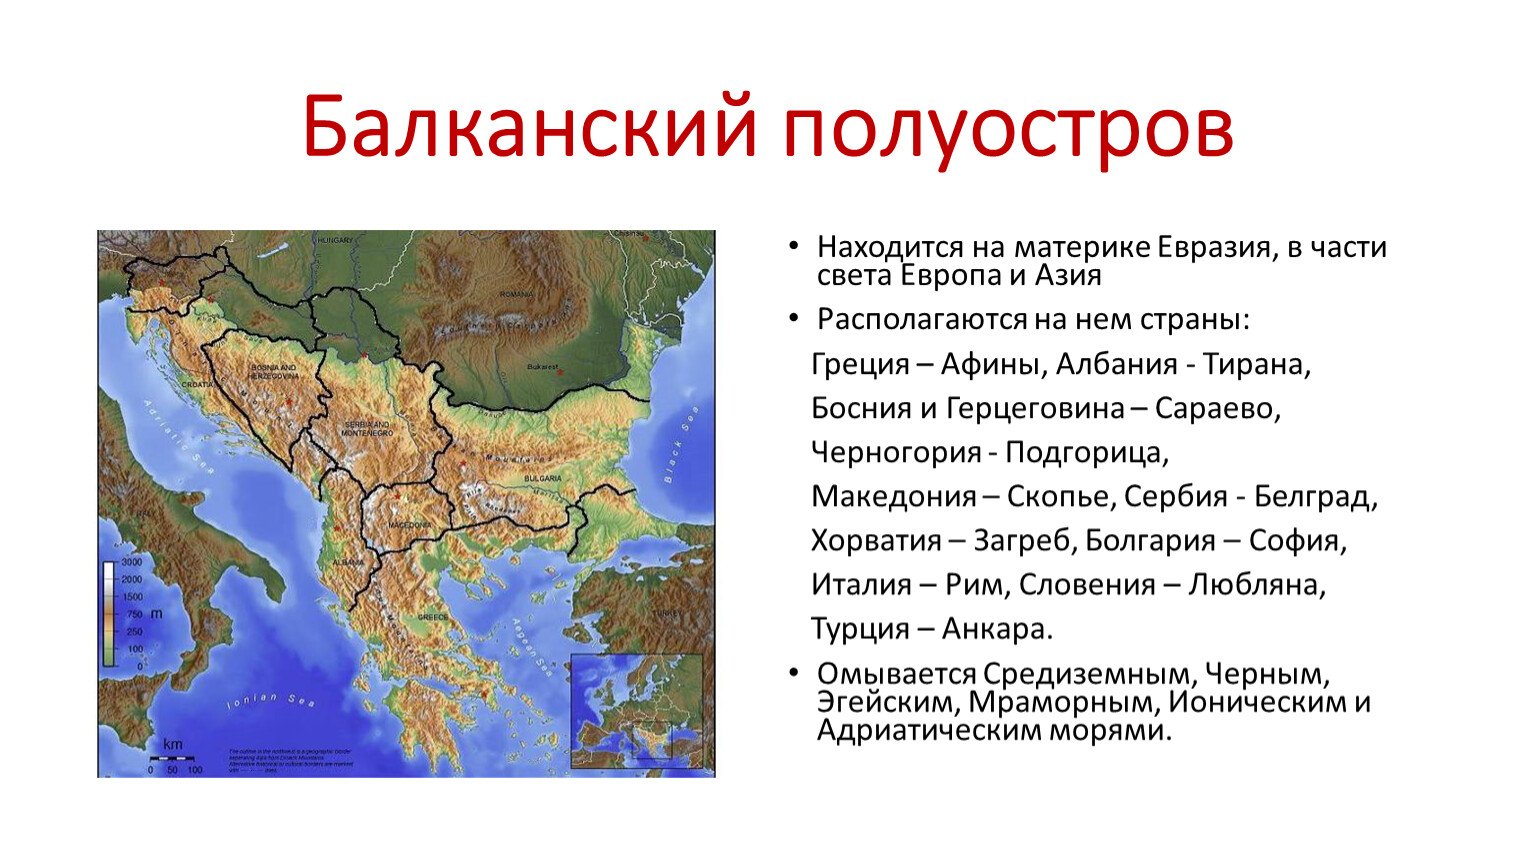 На каком полуострове расположена большая часть территории. Балканский полуостров Южная Европа. Географическое положение Балканского полуострова. Балканский полуостров на карте Евразии. Балканский полуостров на карте древней Греции.